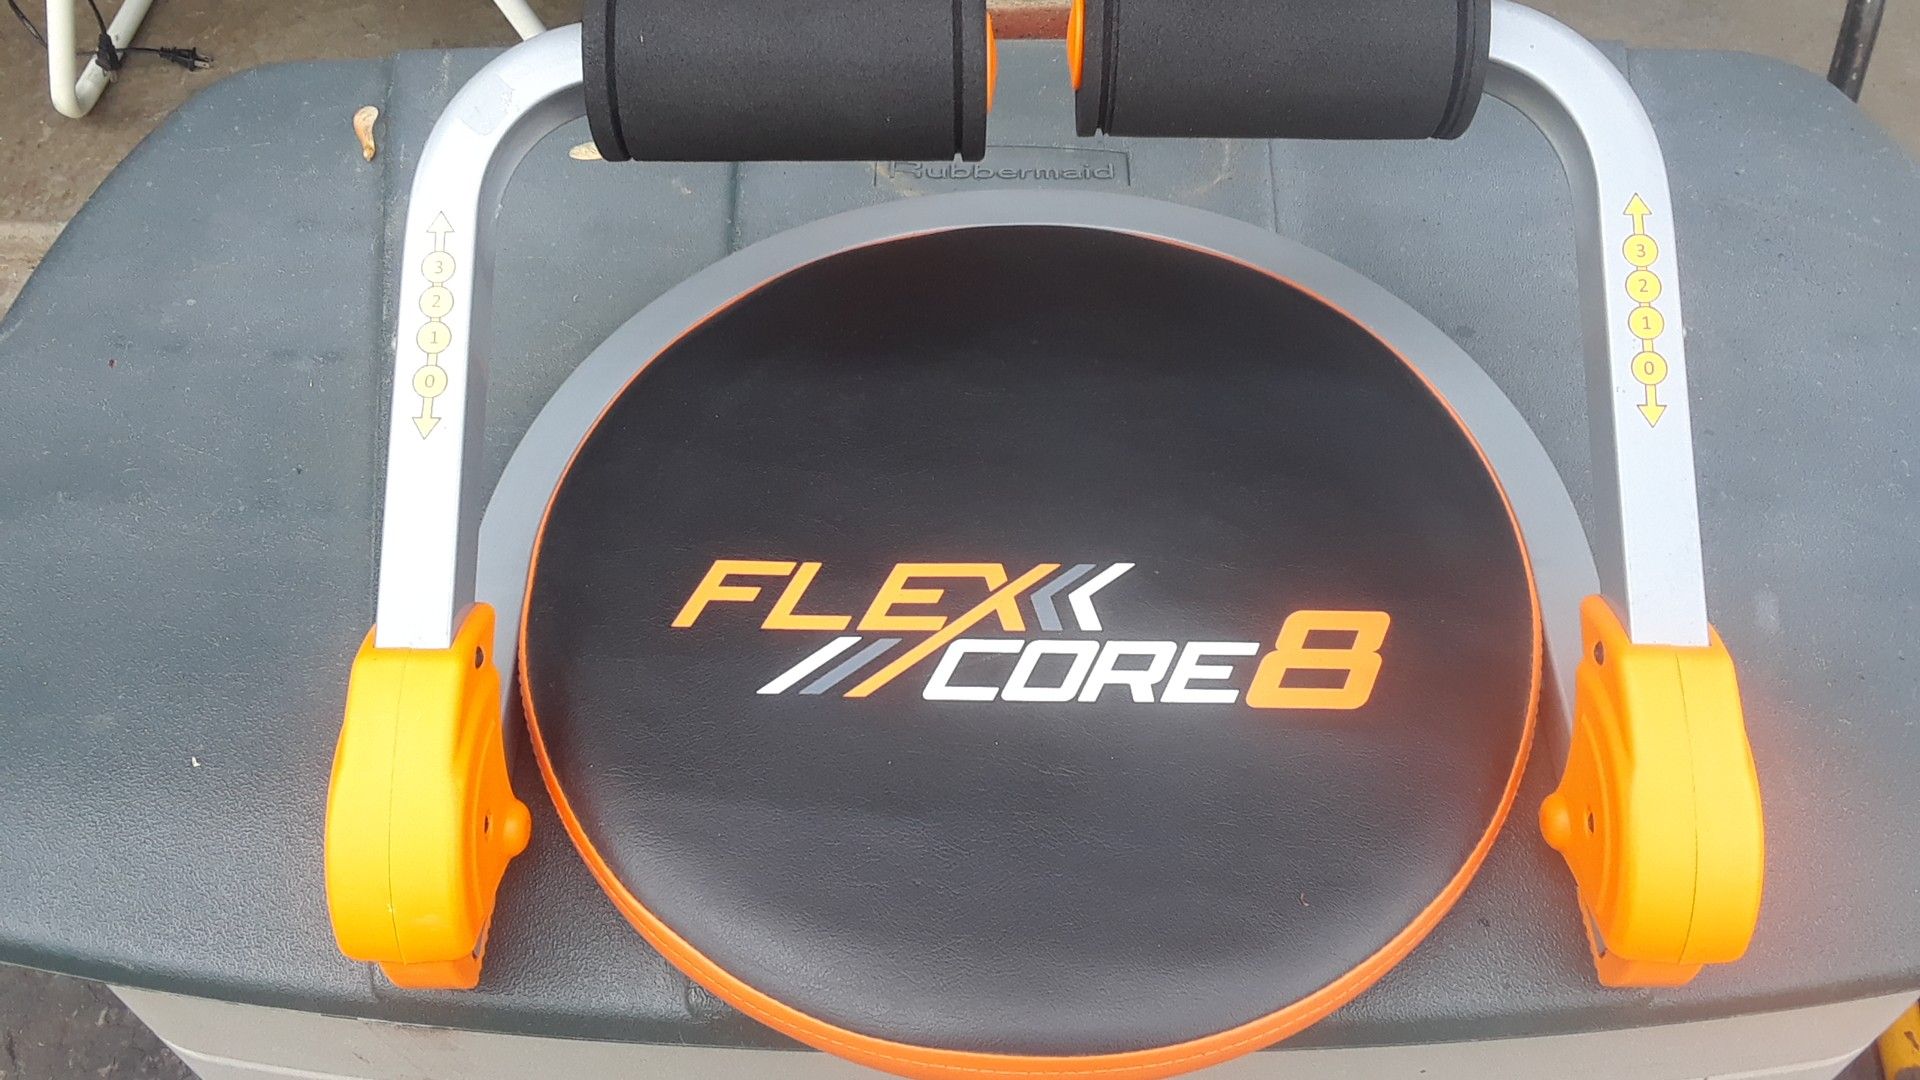 FLEX CORE 8